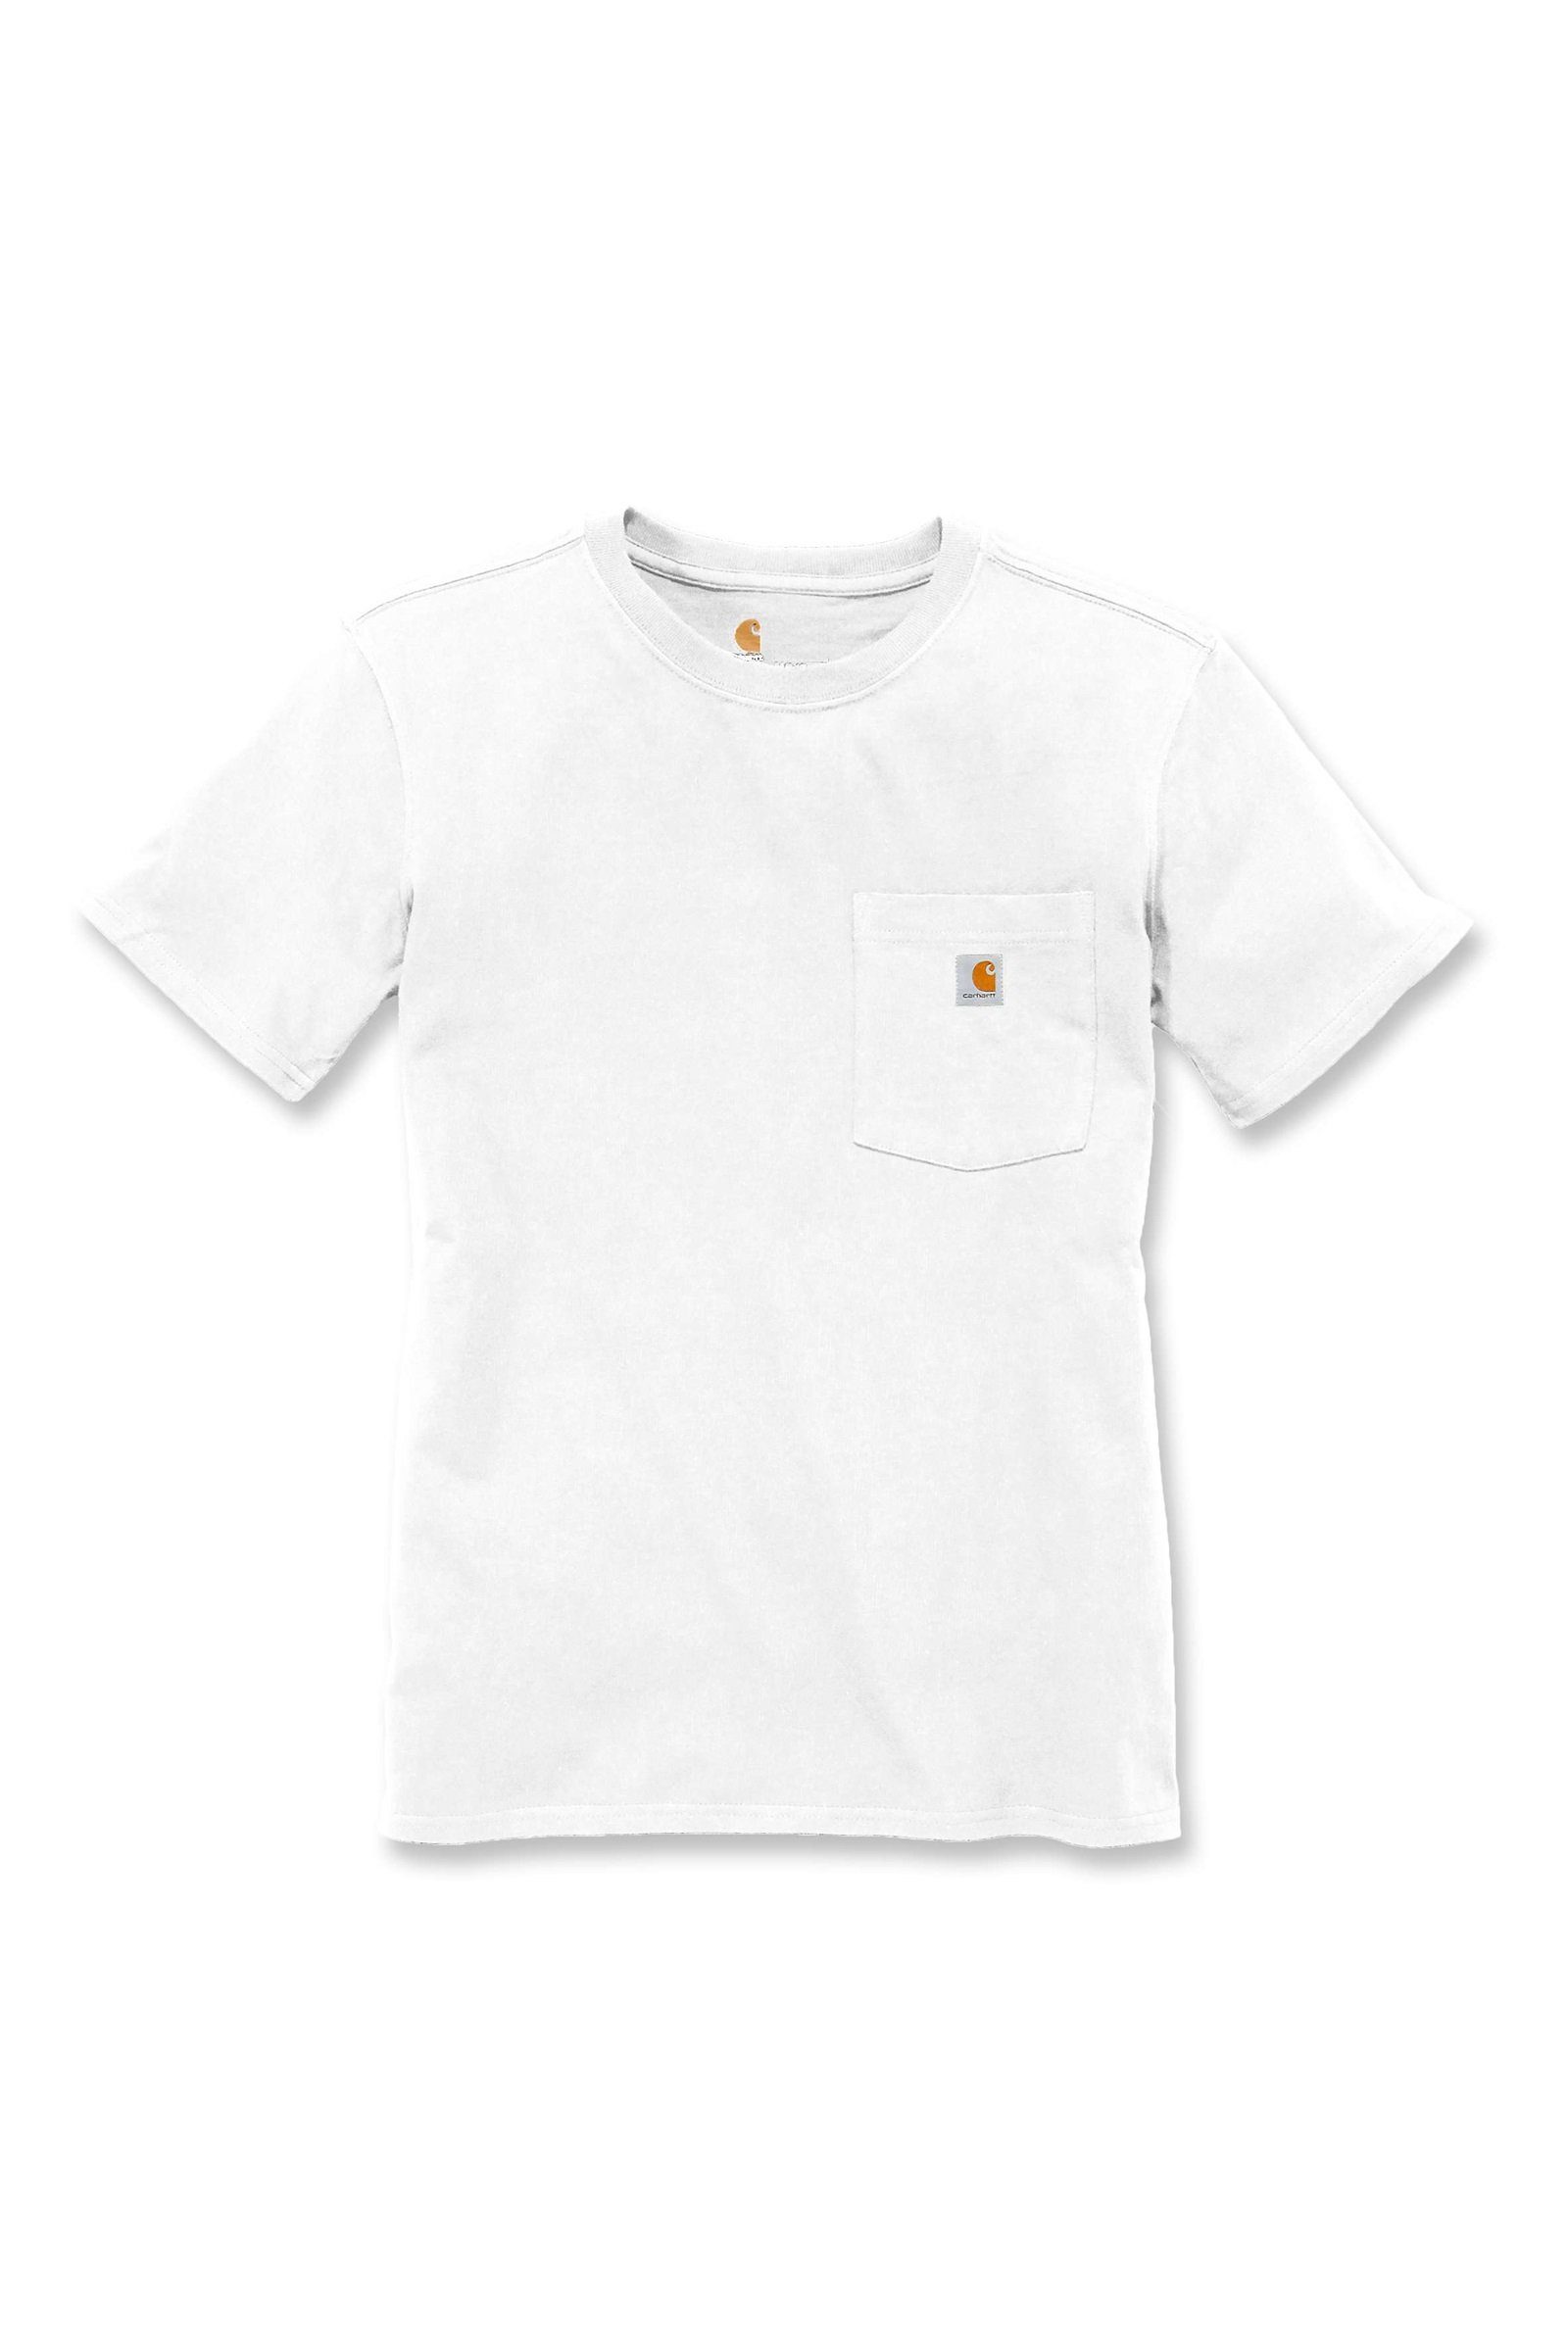 Pocket white Carhartt Fit Carhartt T-Shirt T-Shirt Short-Sleeve Heavyweight Loose Adult Damen